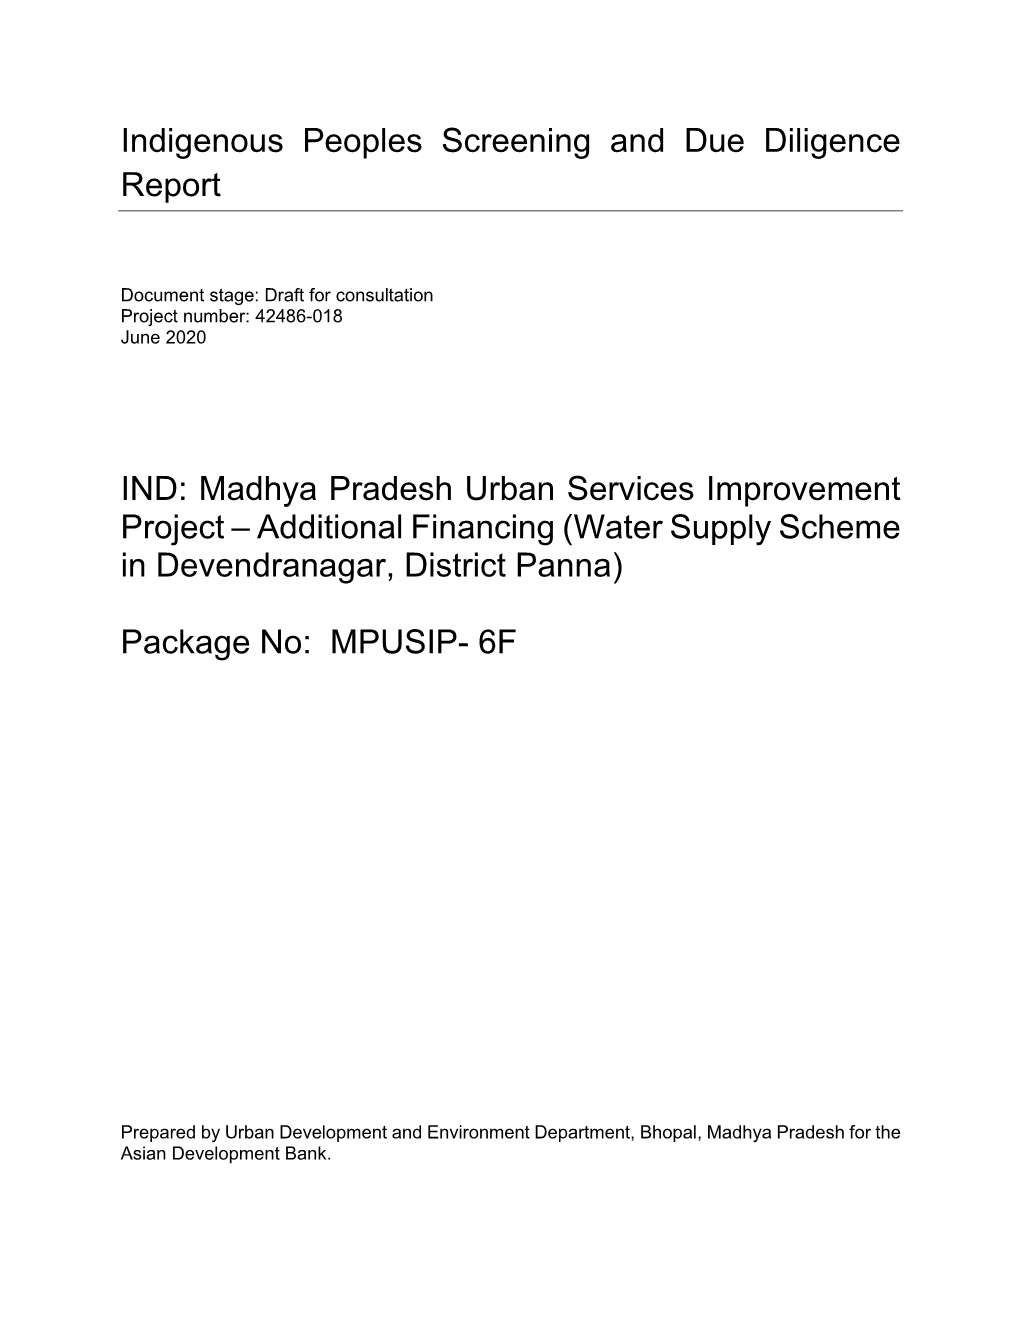 Madhya Pradesh Urban Services Improvement Project – Additional Financing (Water Supply Scheme in Devendranagar, District Panna)